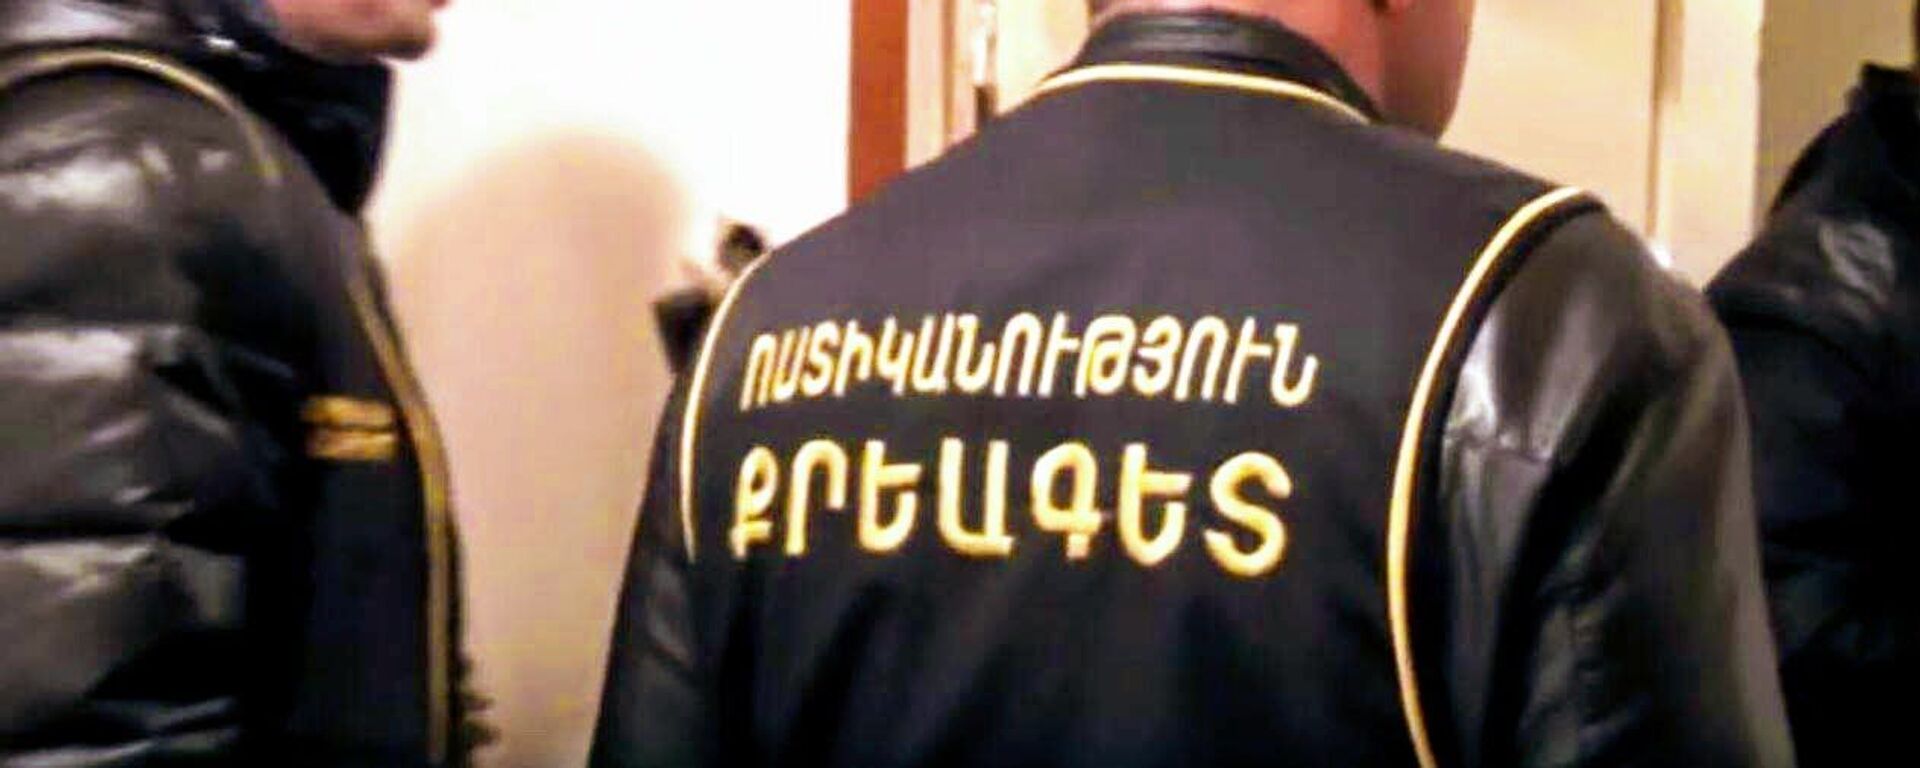 Полицейские-криминалисты - Sputnik Армения, 1920, 05.02.2021